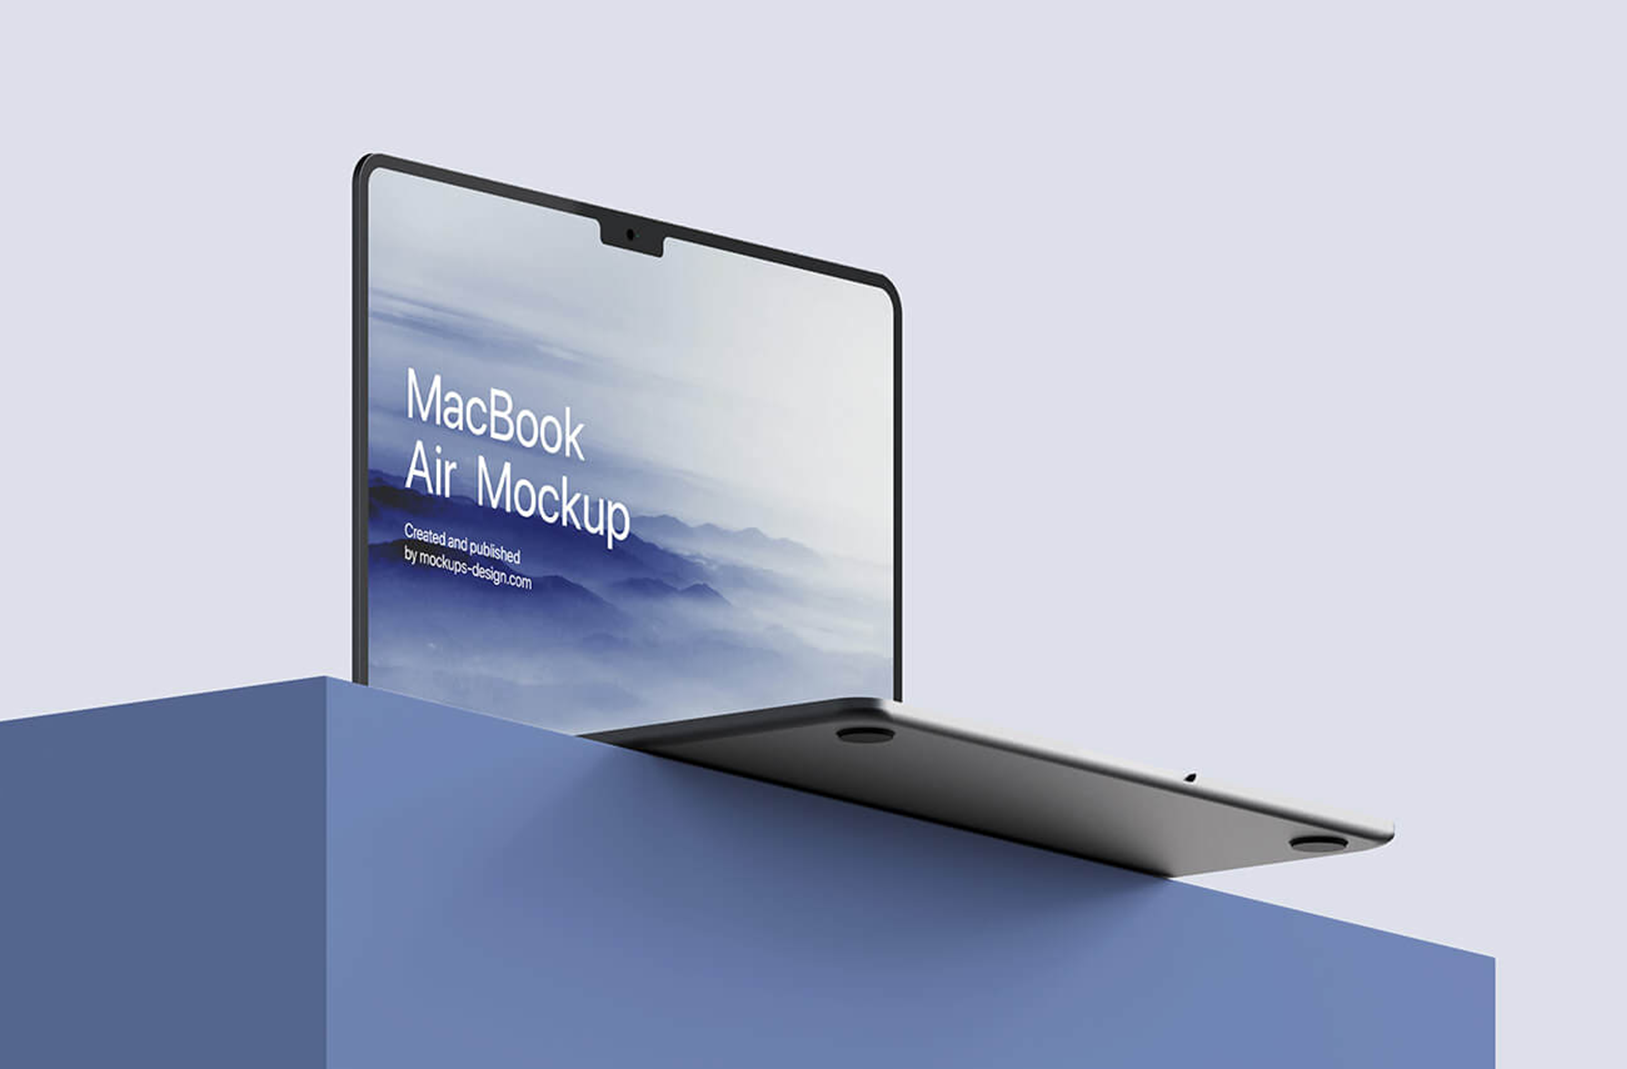 Все, що відомо про MacBook Air 15 дюймів – коли вийде, характеристики, ціна